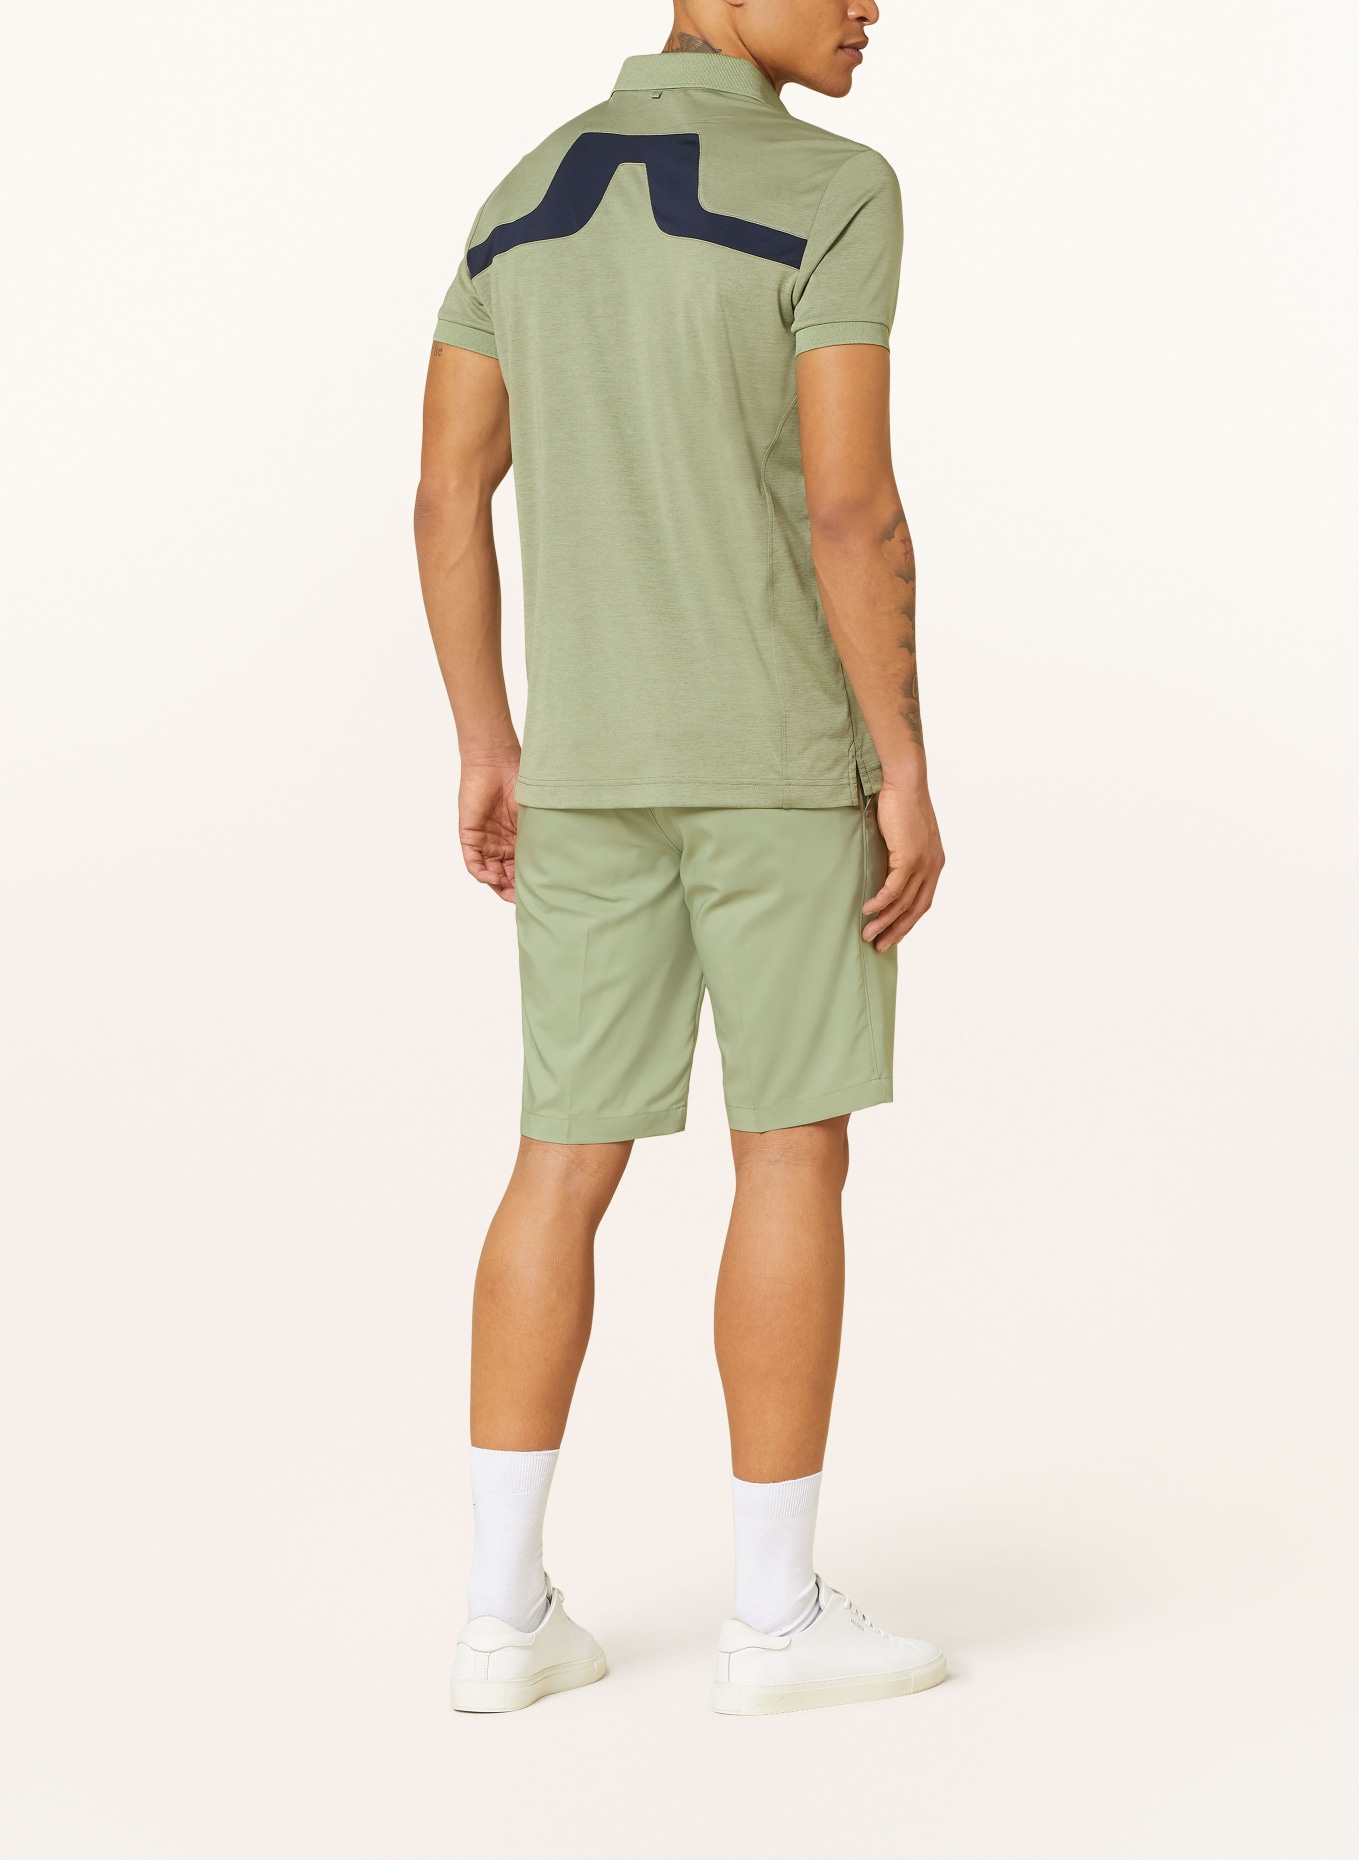 J.LINDEBERG Performance polo shirt, Color: LIGHT GREEN (Image 3)